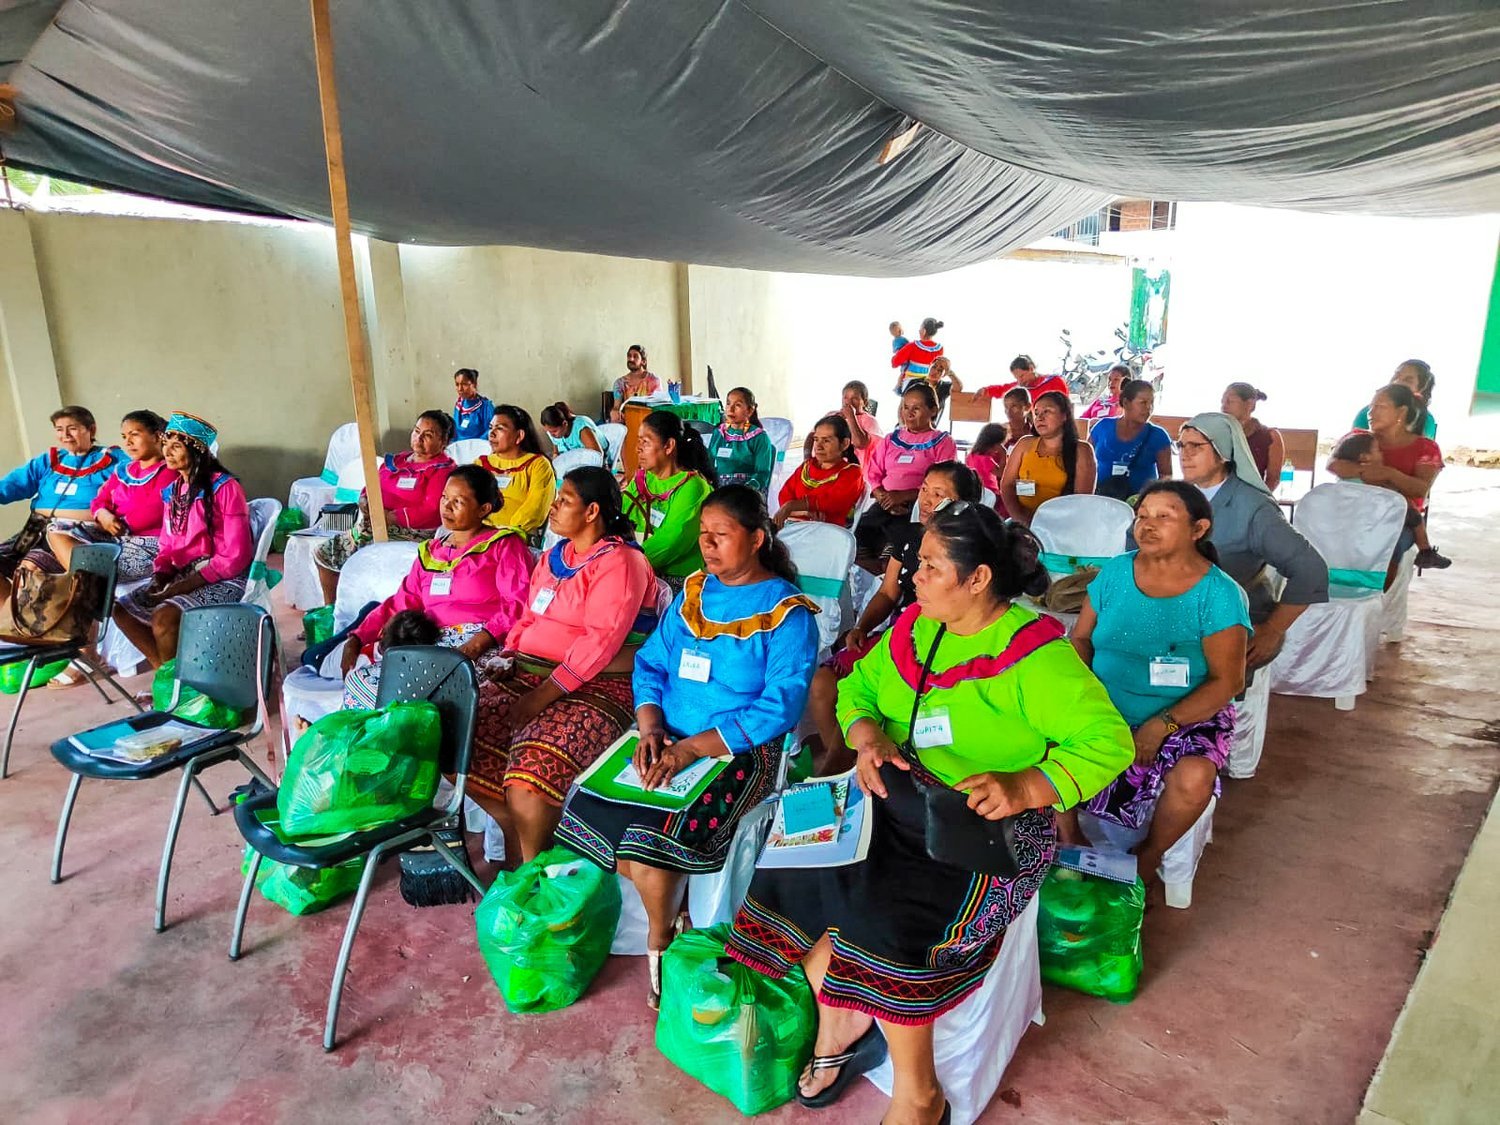 women-leaders-native-communities-upper-amazon-conservancy-2.jpeg